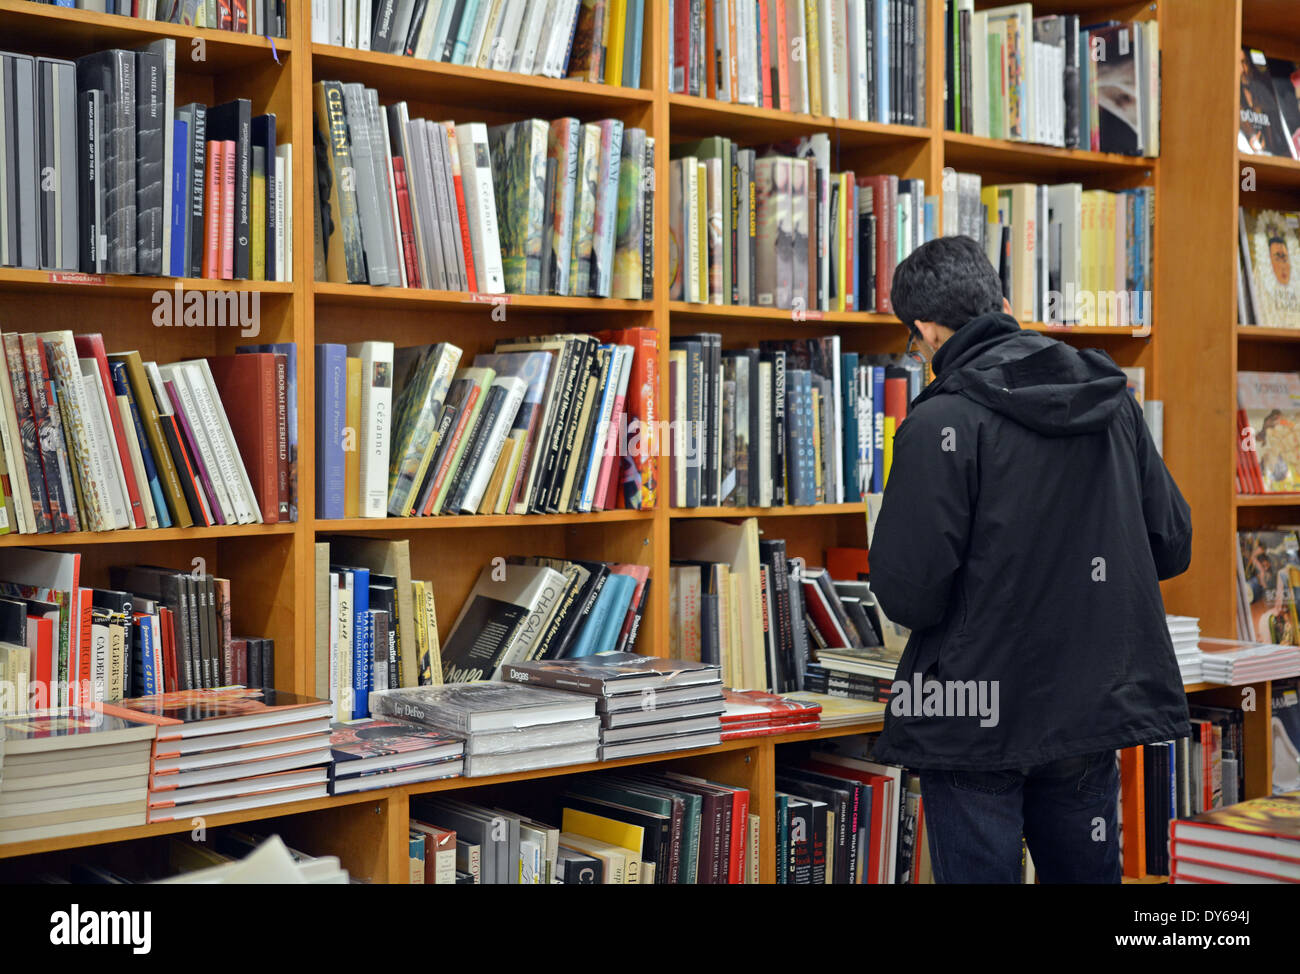 Un homme dans un manteau d'achats de livres à la librairie Strand à Broadway dans Greenwich Village, Manhattan, New York. Banque D'Images